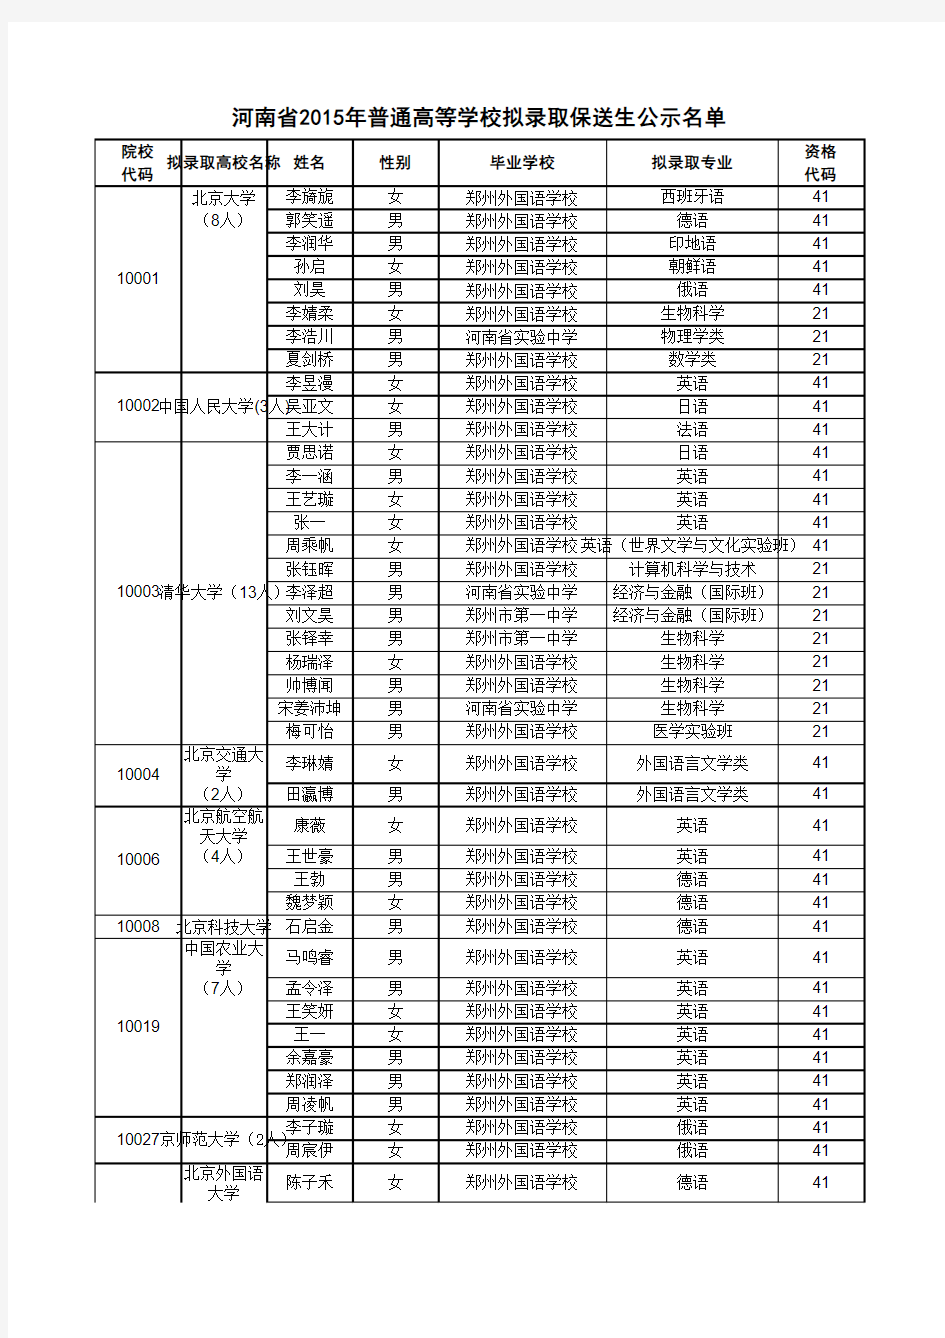 河南省2015年普通高等学校拟录取保送生公示名单